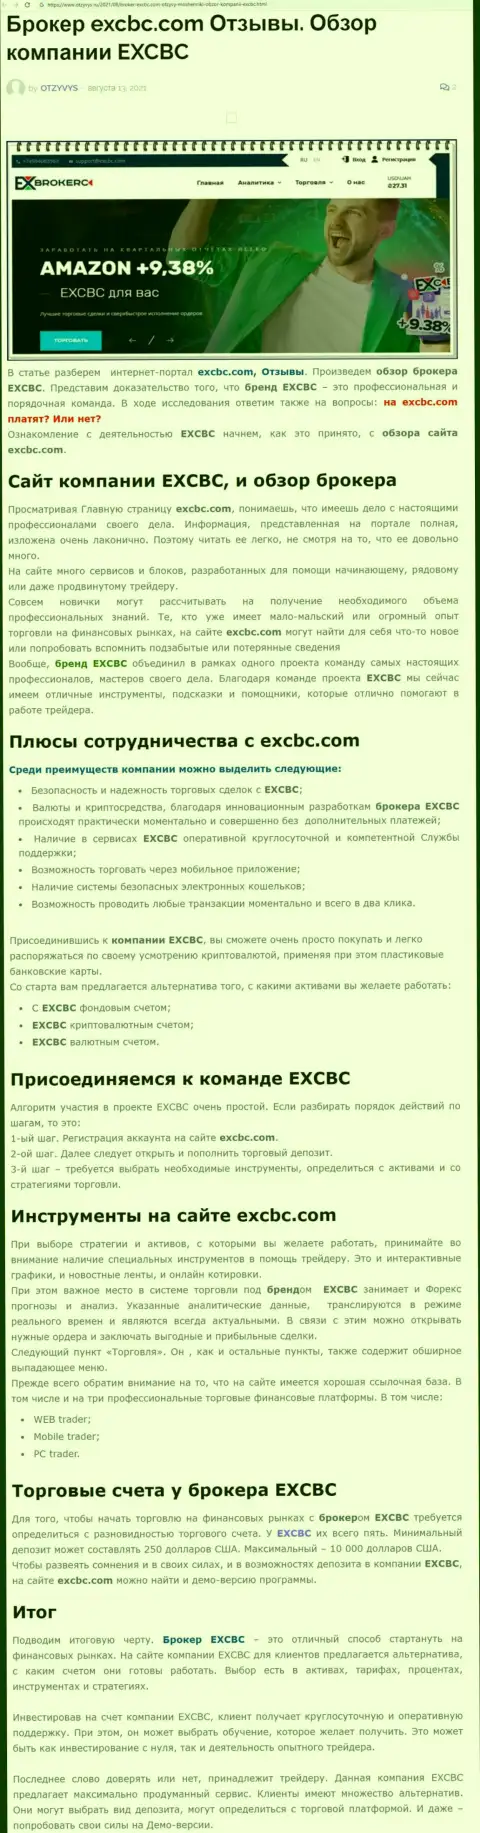 ЕХ Брокерс - это честная и надежная ФОРЕКС организация, это следует из материала на web-ресурсе Otzyvys Ru